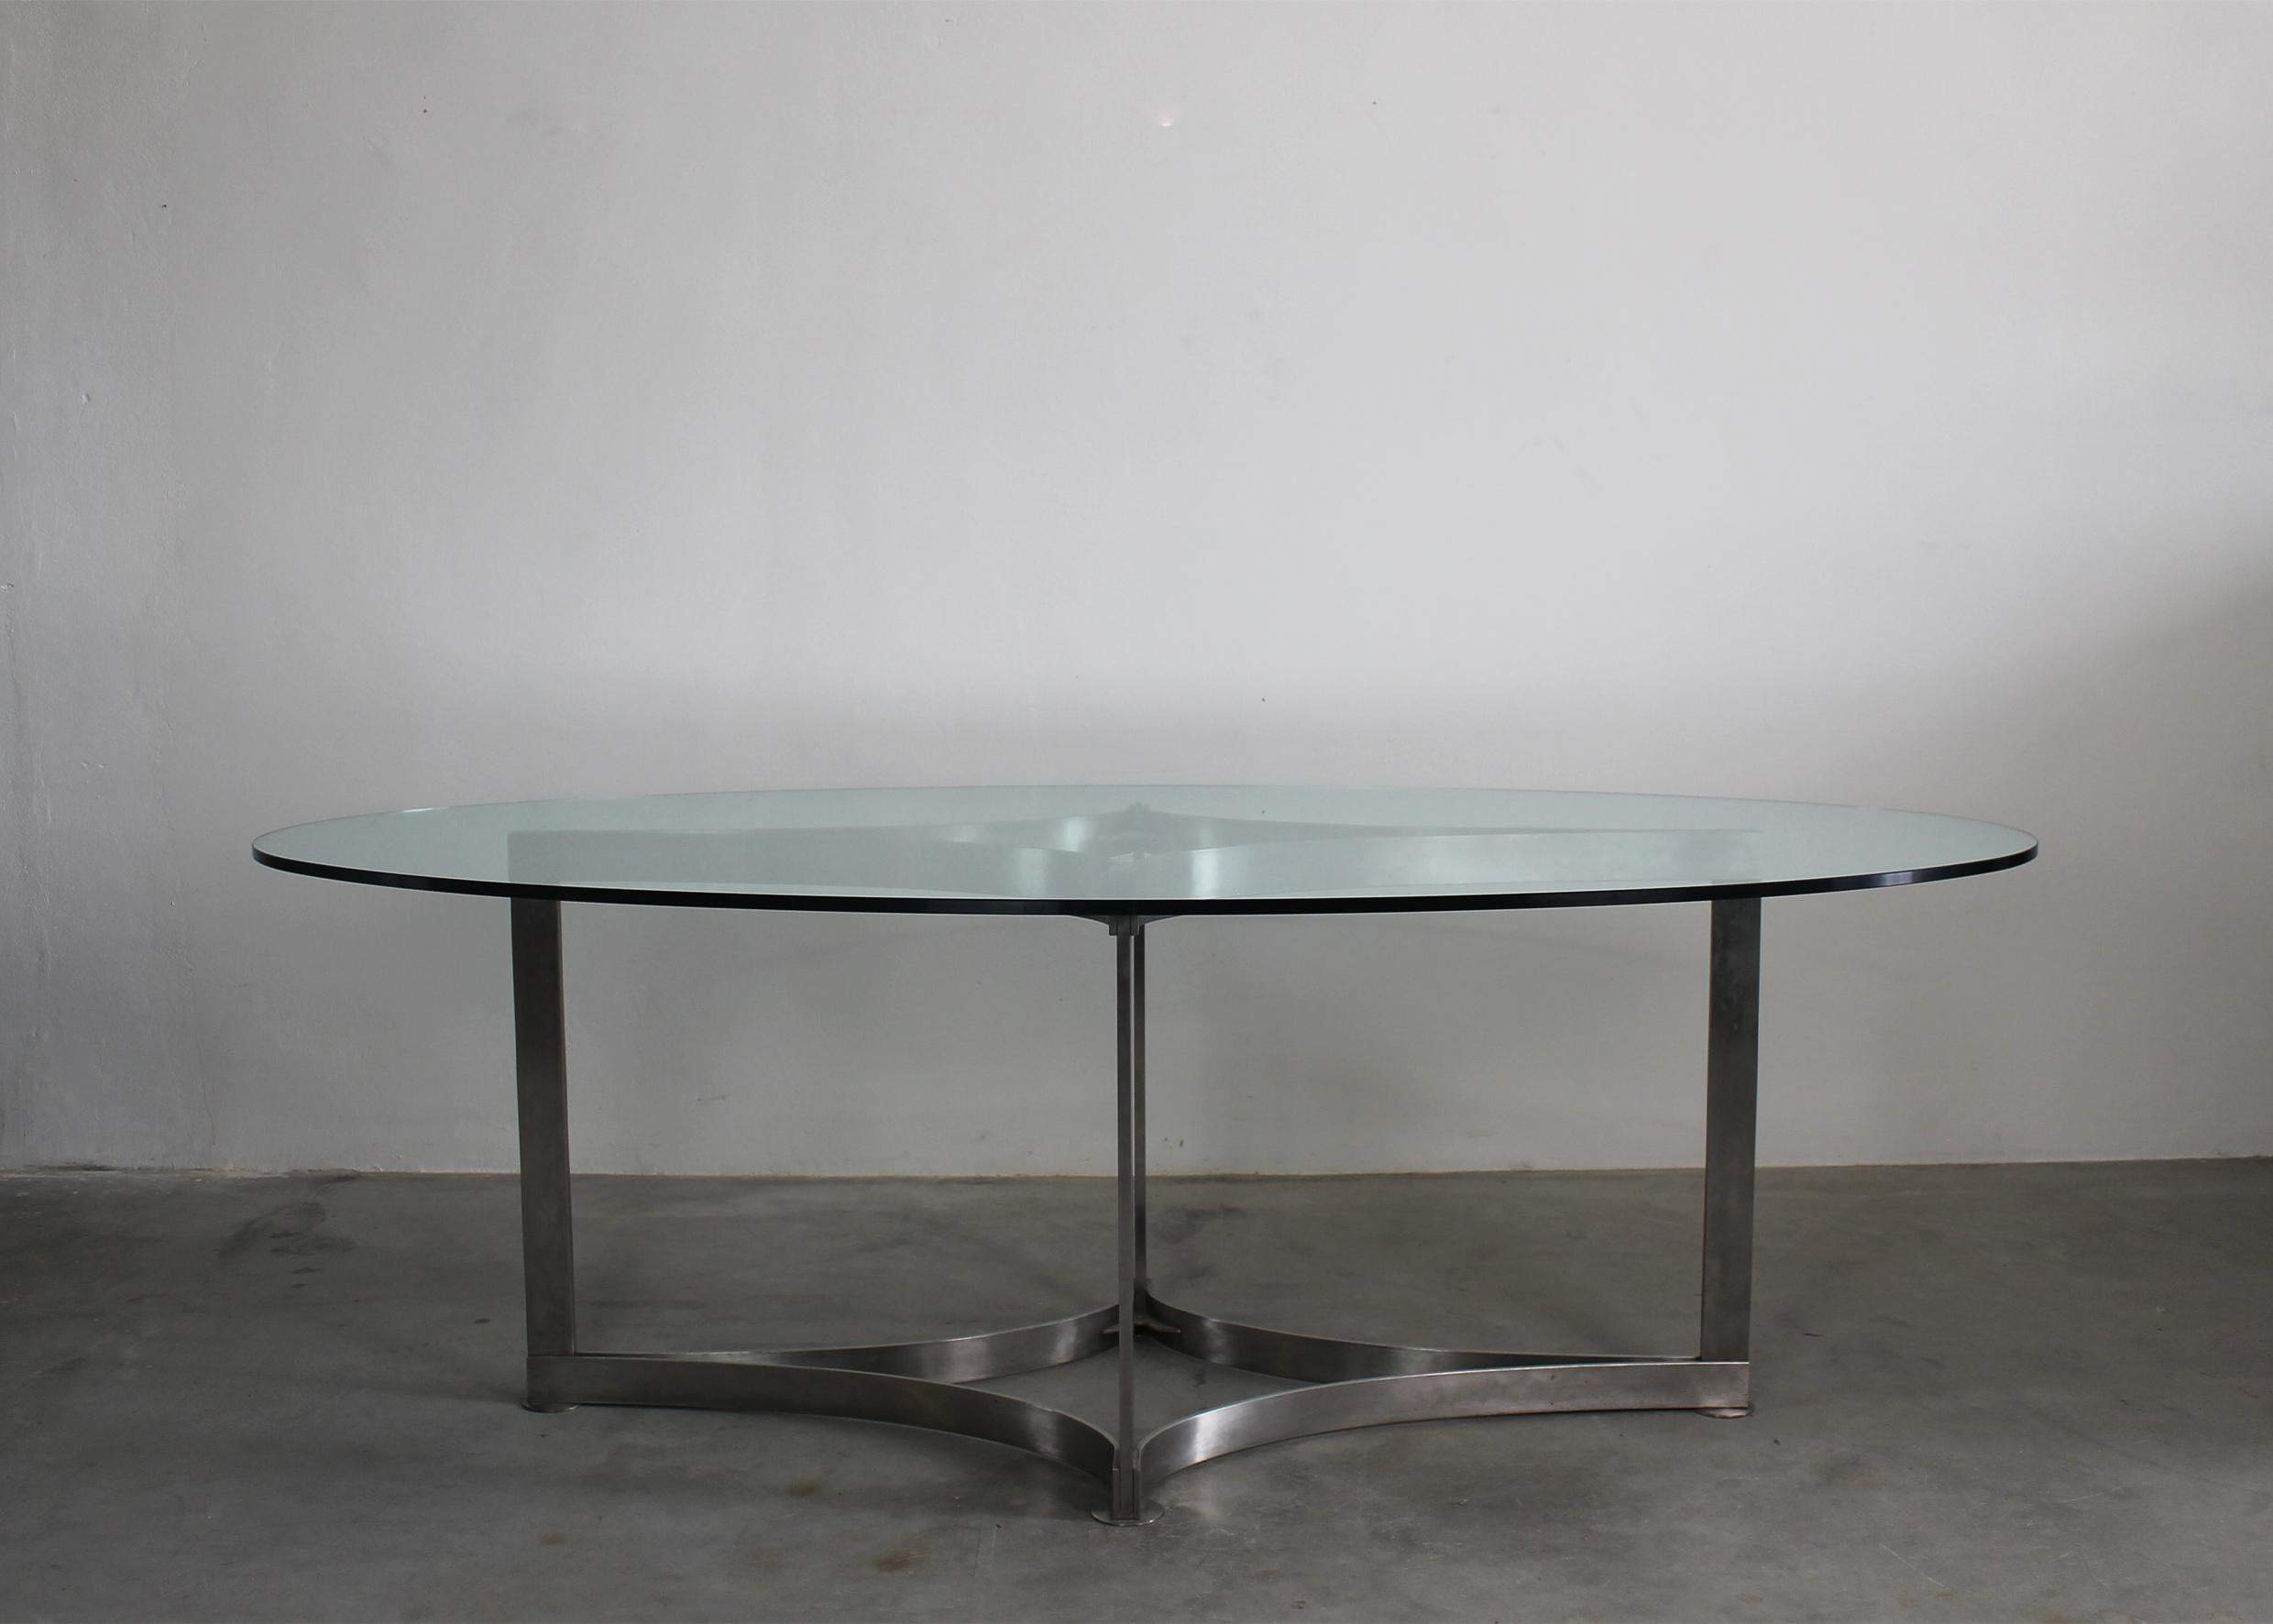 Sehr seltener Esstisch mit einem schönen Untergestell aus Stahl und einer ovalen Platte aus dickem Glas, entworfen von Vittorio Introini und hergestellt von Saporiti in den 1970er Jahren.

Vittorio Introini ist ein italienischer Designer und